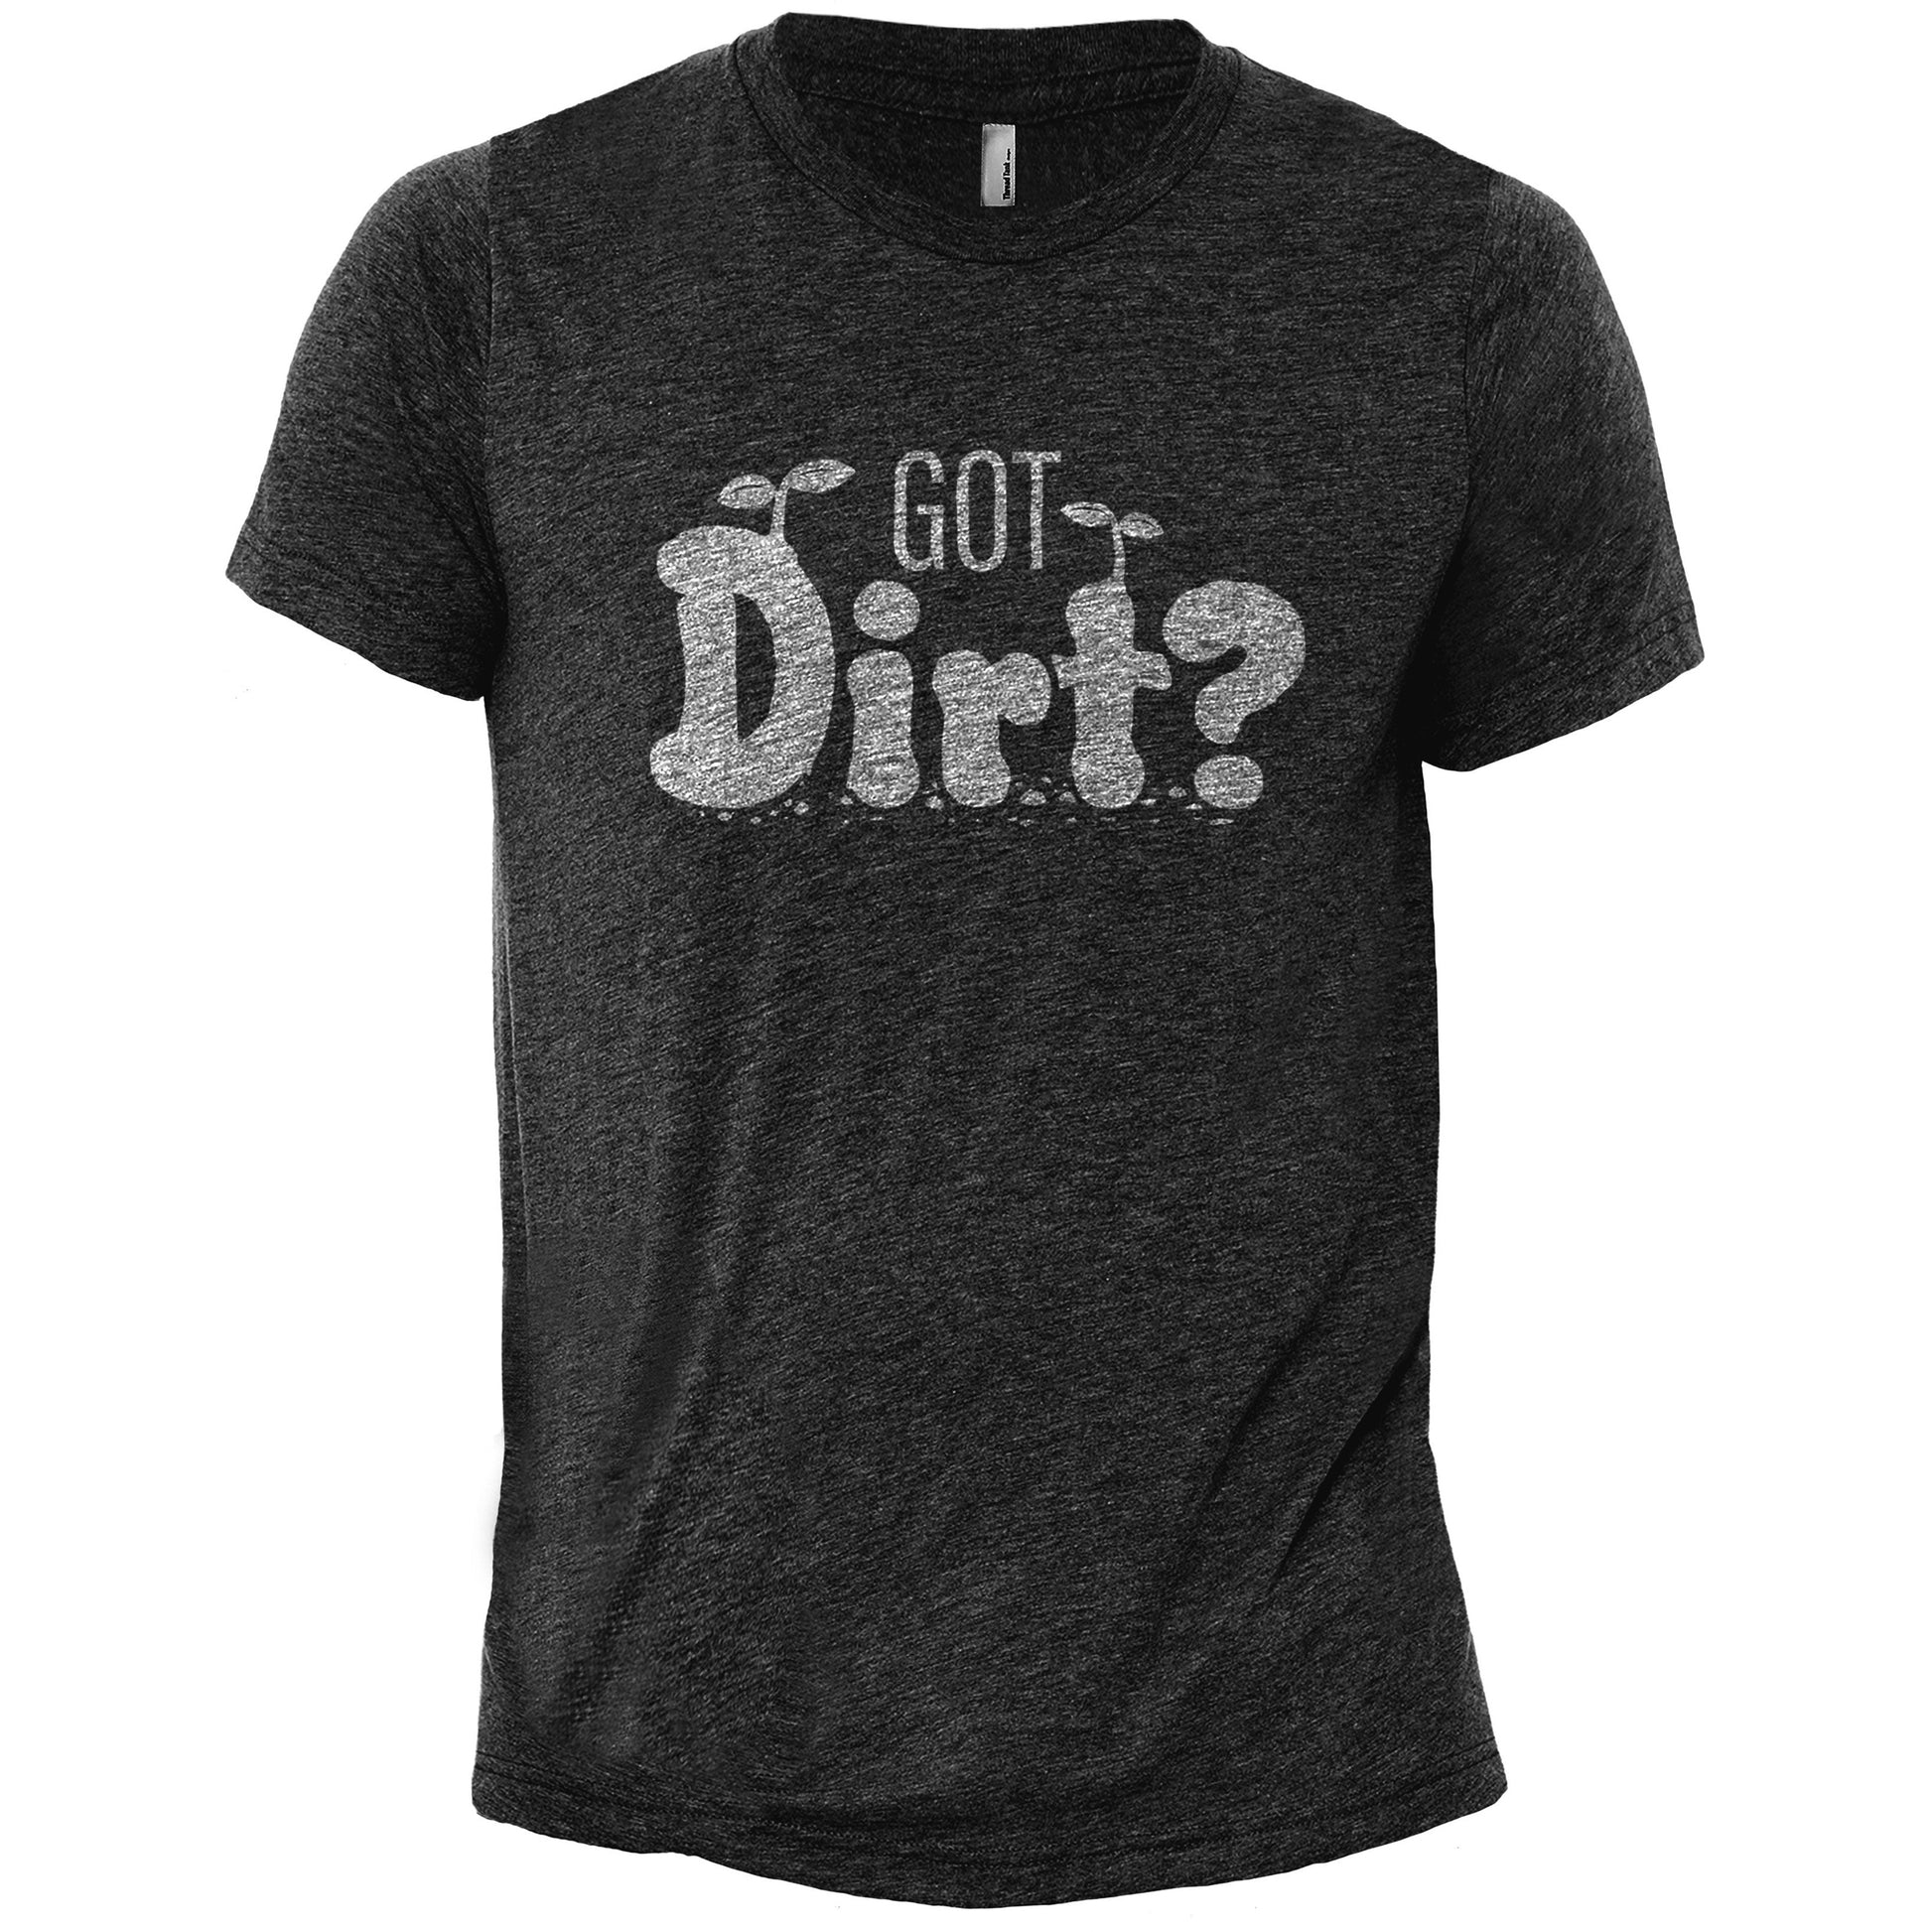 Got dirt? - threadtank | stories you can wear